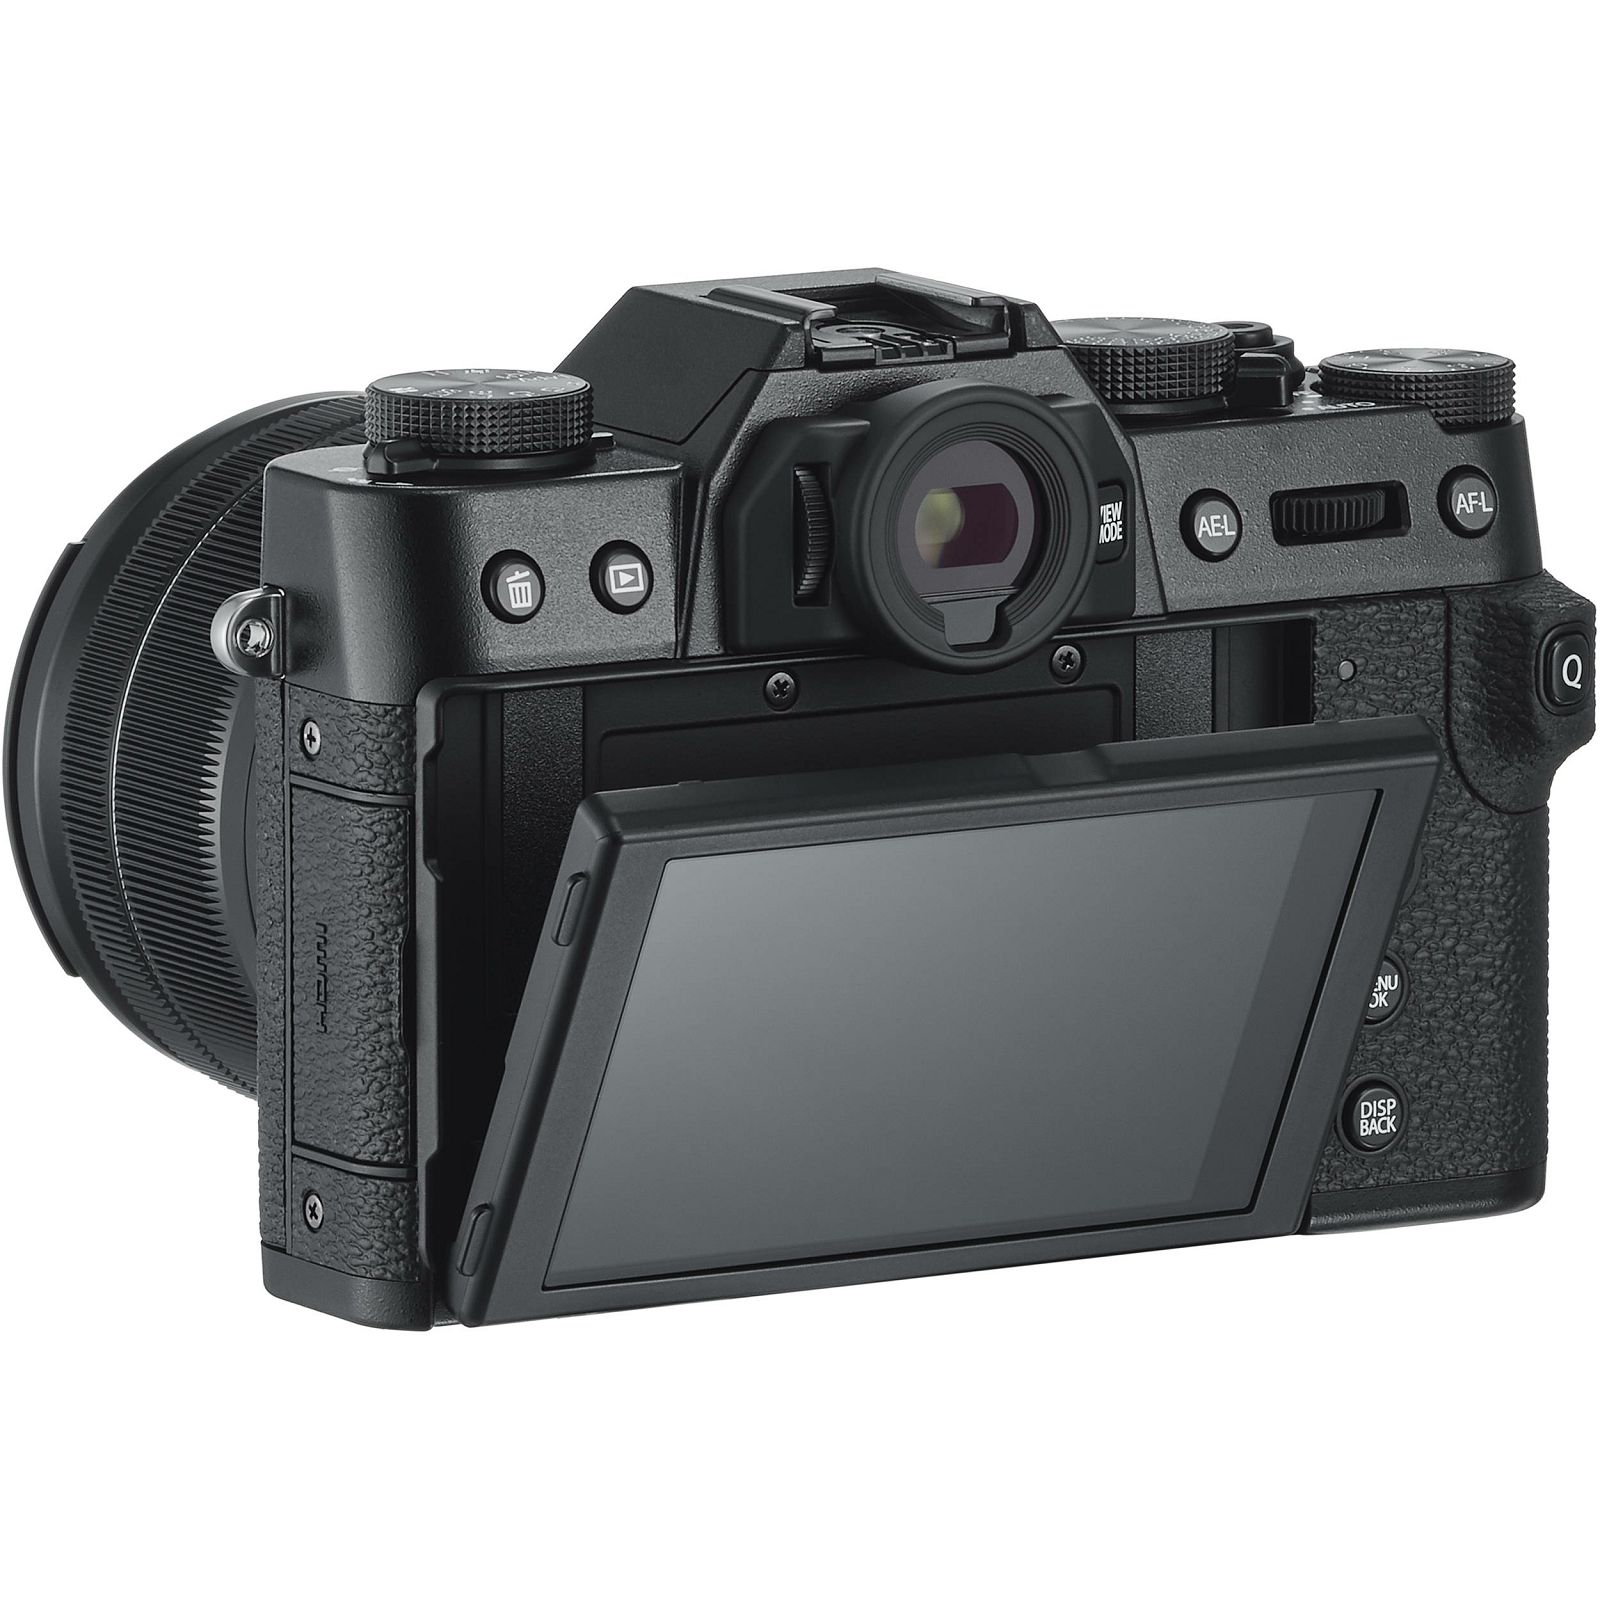 Fujifilm X-T30 + XC 15-45 f/3.5-5.6 OIS PZ KIT Black crni digitalni mirrorless fotoaparat s objektivom 15-45mm Fuji (16619267)